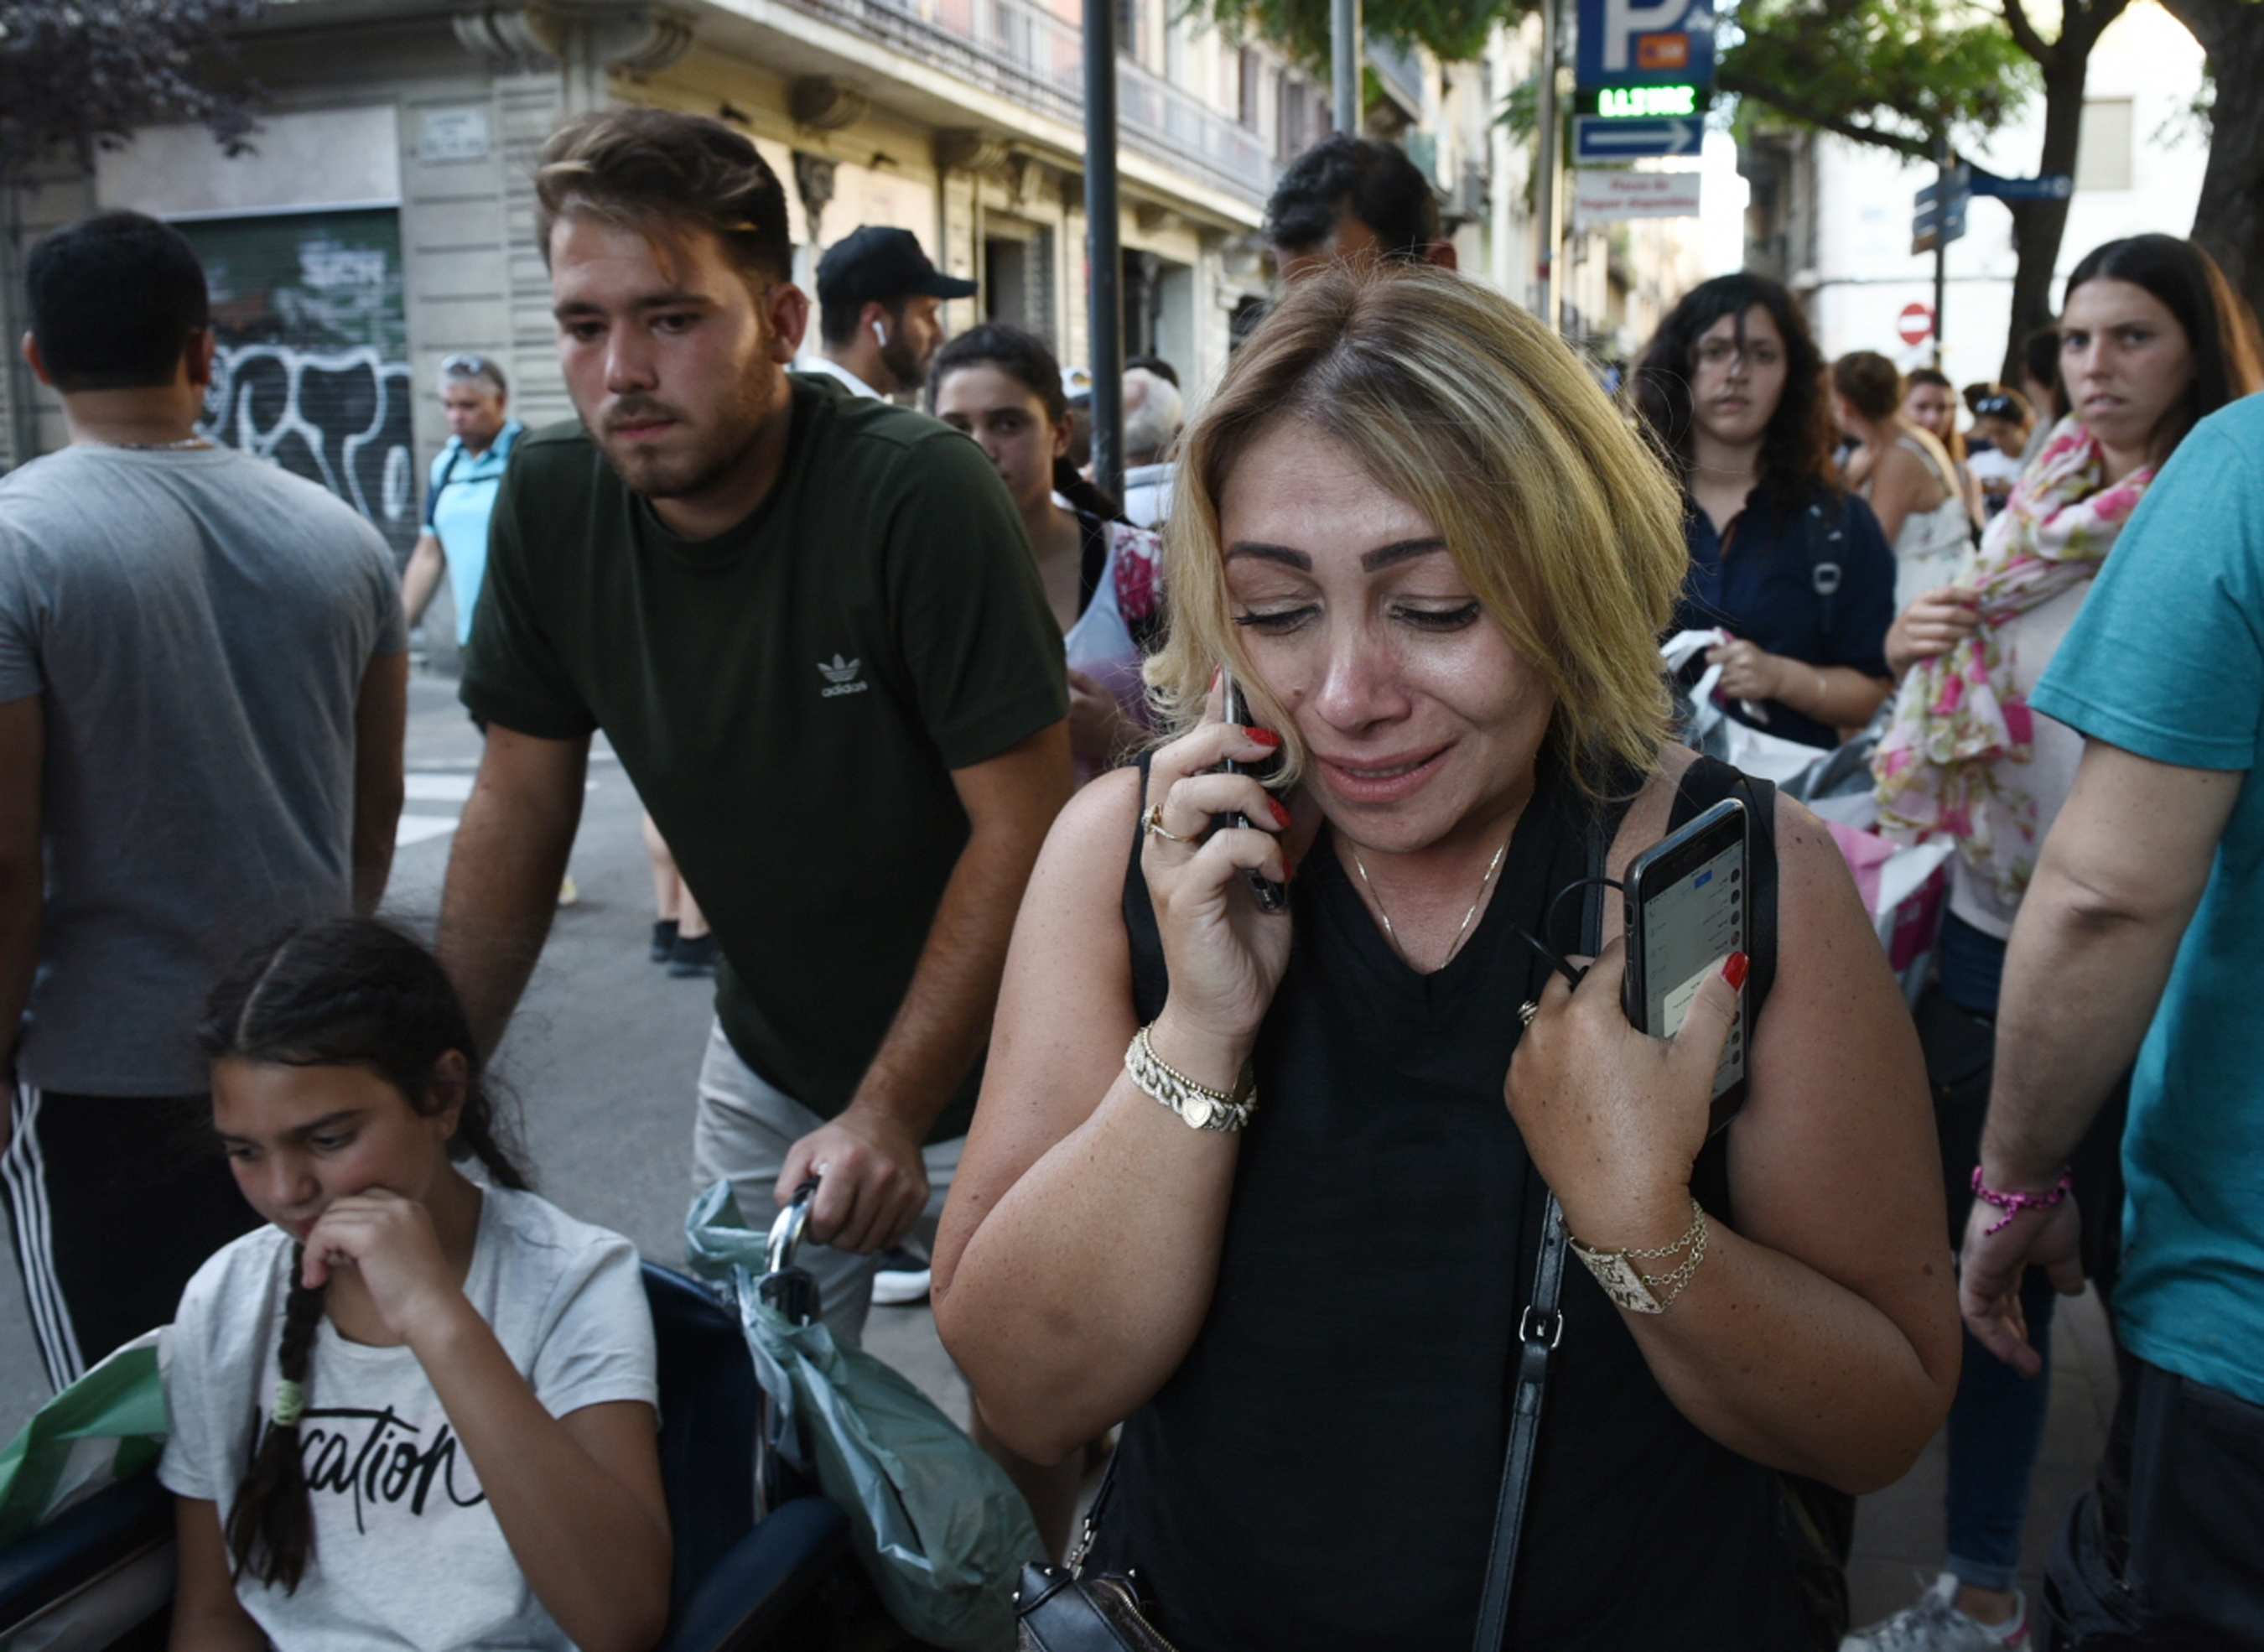 "Vi a muchas personas sangrando en el suelo": relatan atentado en Barcelona